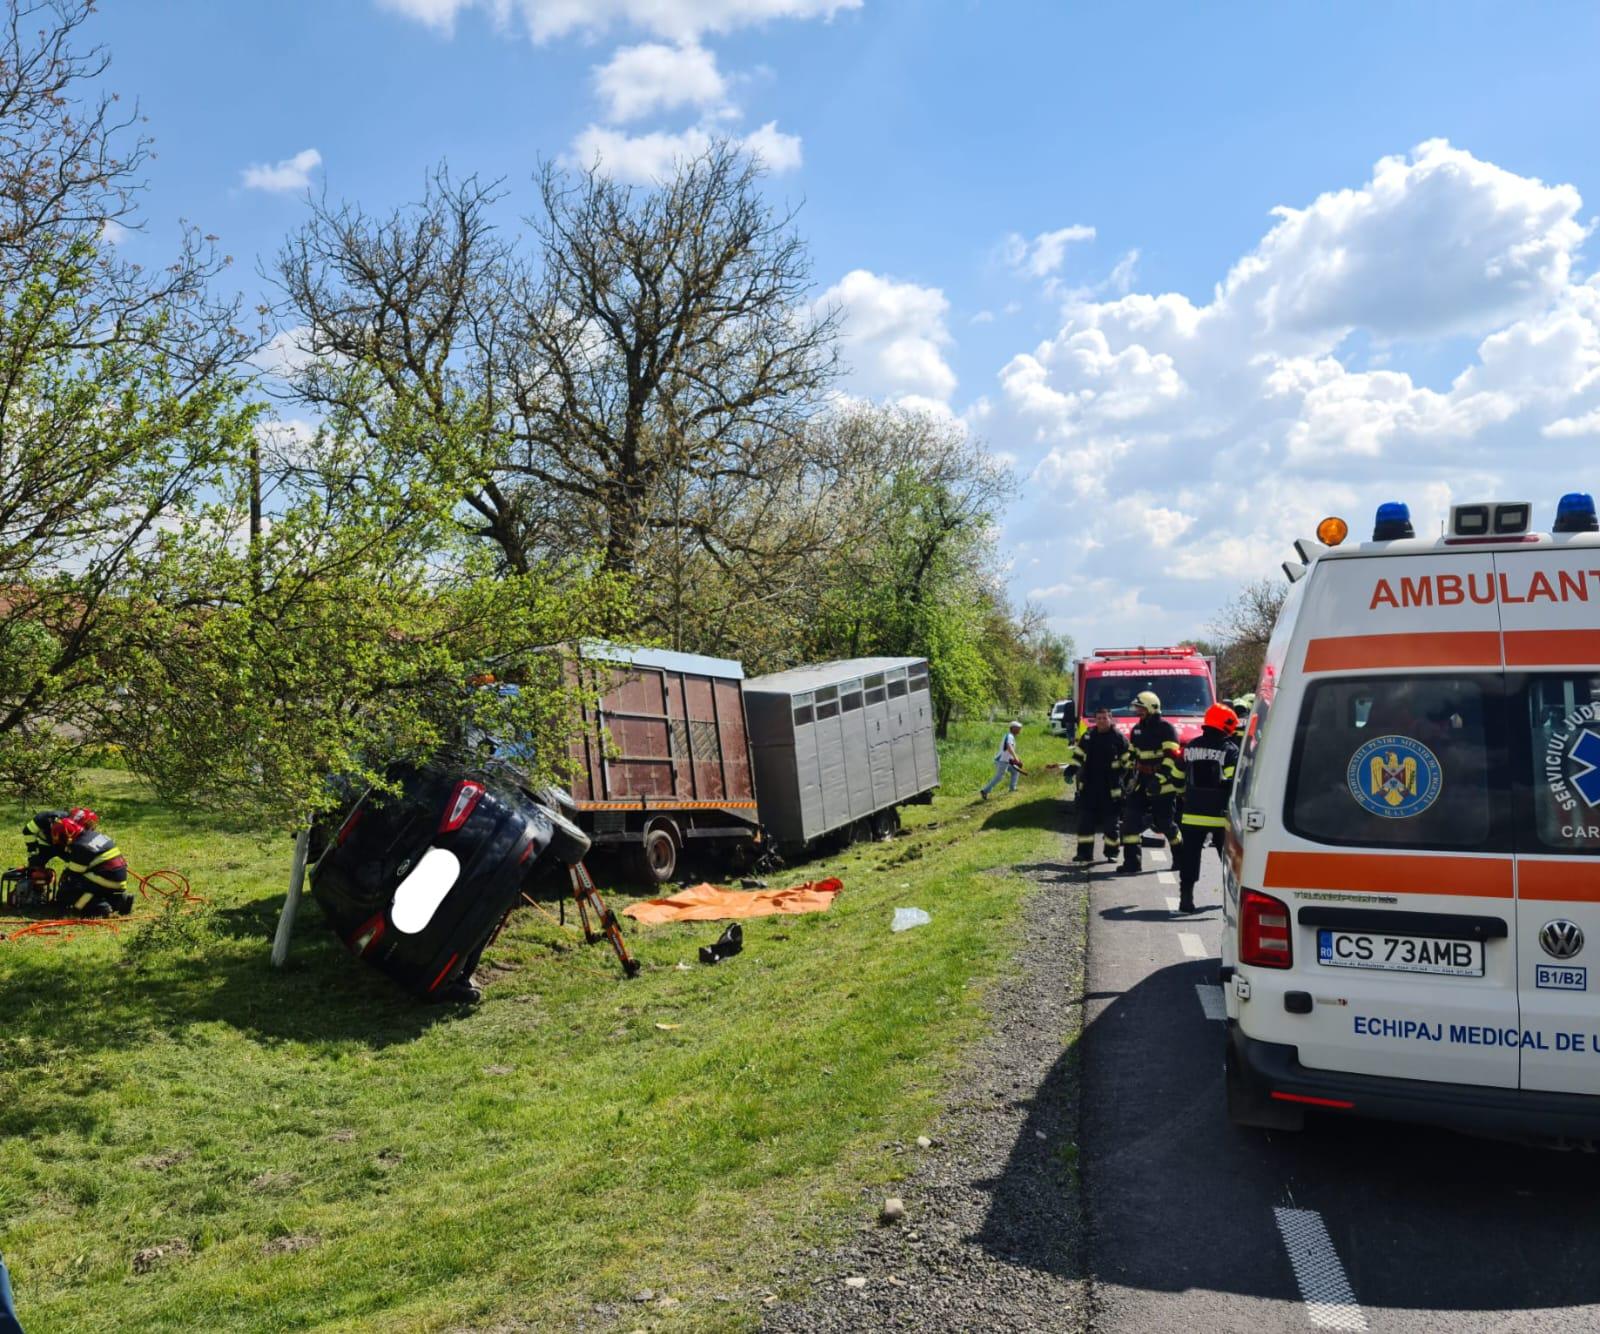 Dezastru pe o șosea din Caransebeş. Un mort și patru răniți, după ce un TIR, o autoutilitară şi trei mașini s-au făcut zob. Vehiculele "au zburat" de pe şosea